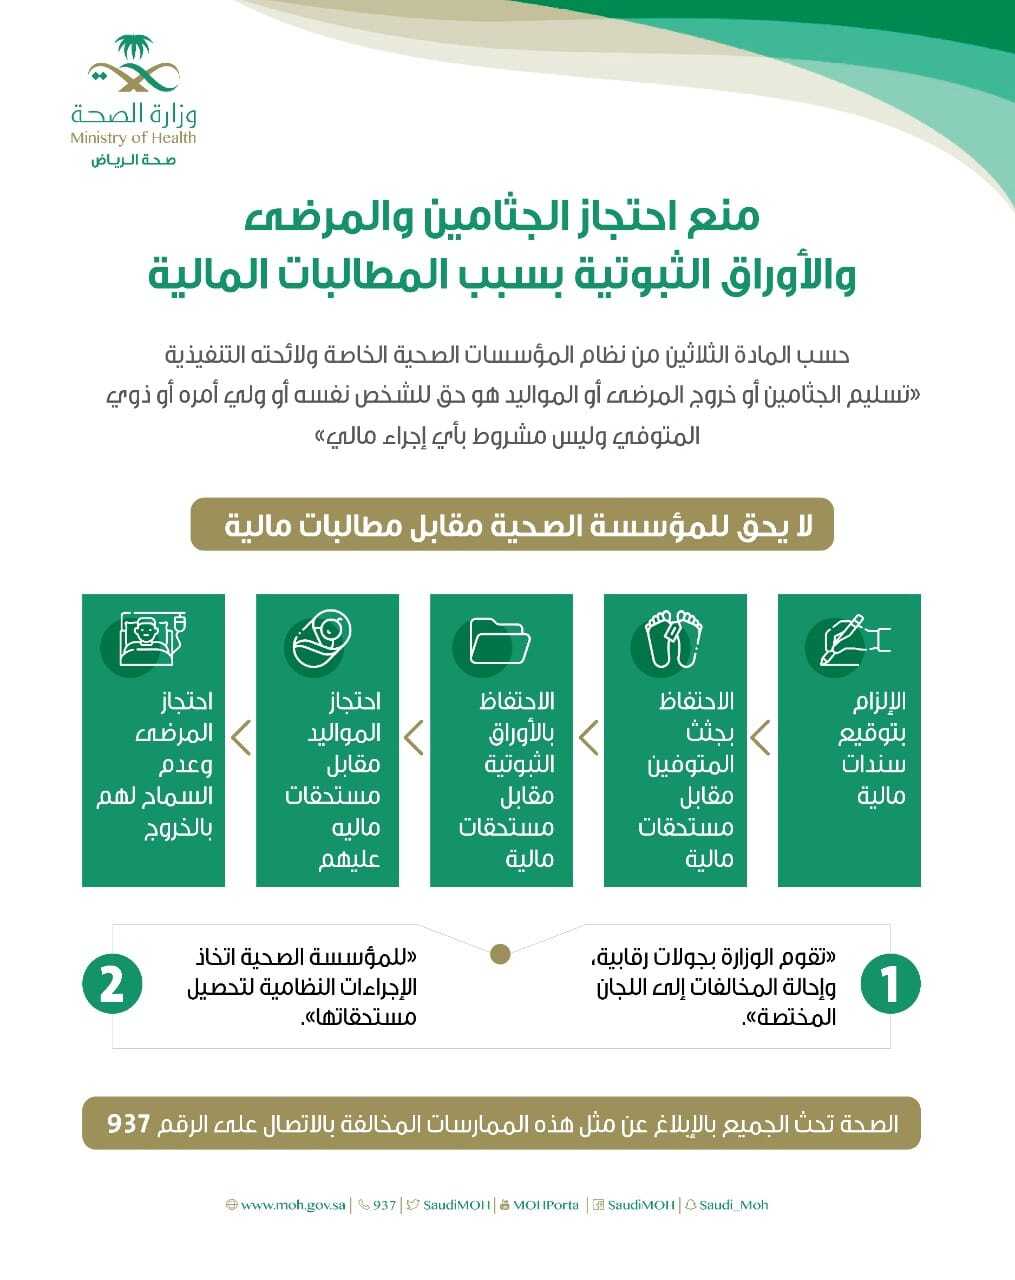 صحة منطقة الرياض: لا يحق احتجاز الجثامين والمرضي بسبب المطالبات المالية على المريض 